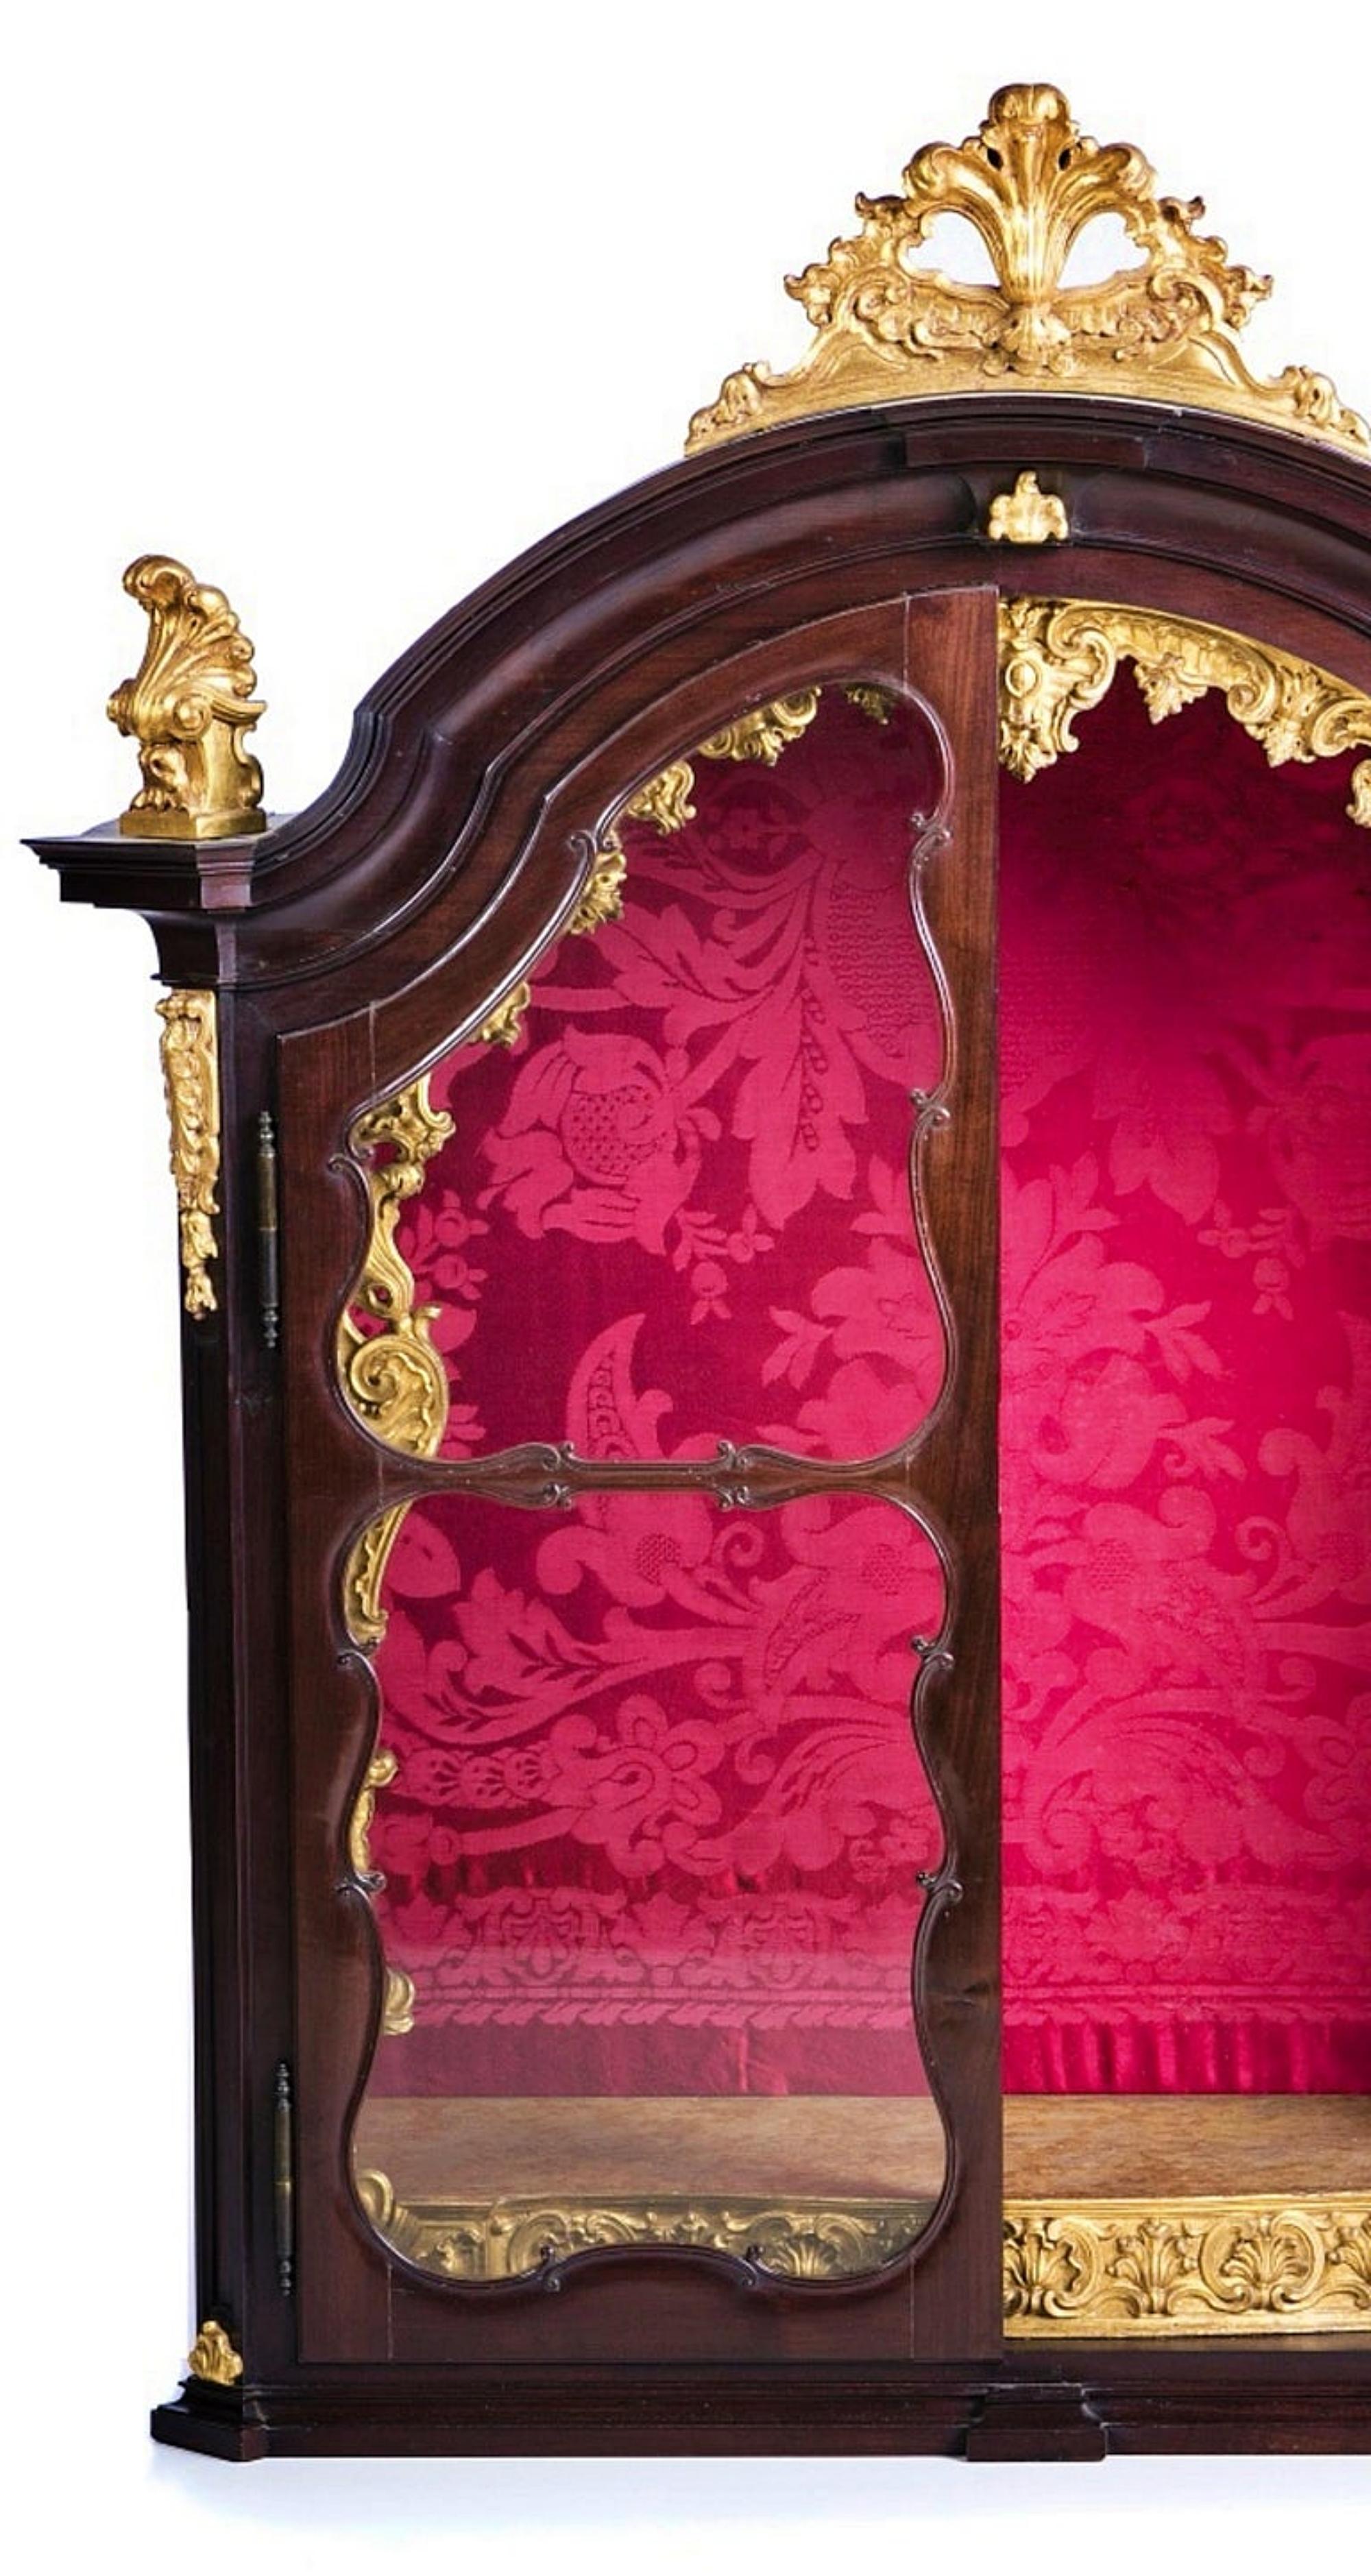 L'ORATOIRE PORTUGAIS

18ème siècle
en bois d'acajou avec dorure. Portes en verre. Intérieur en abricot.
Dim. : 155 x 120 x 47 cm.
bonnes conditions